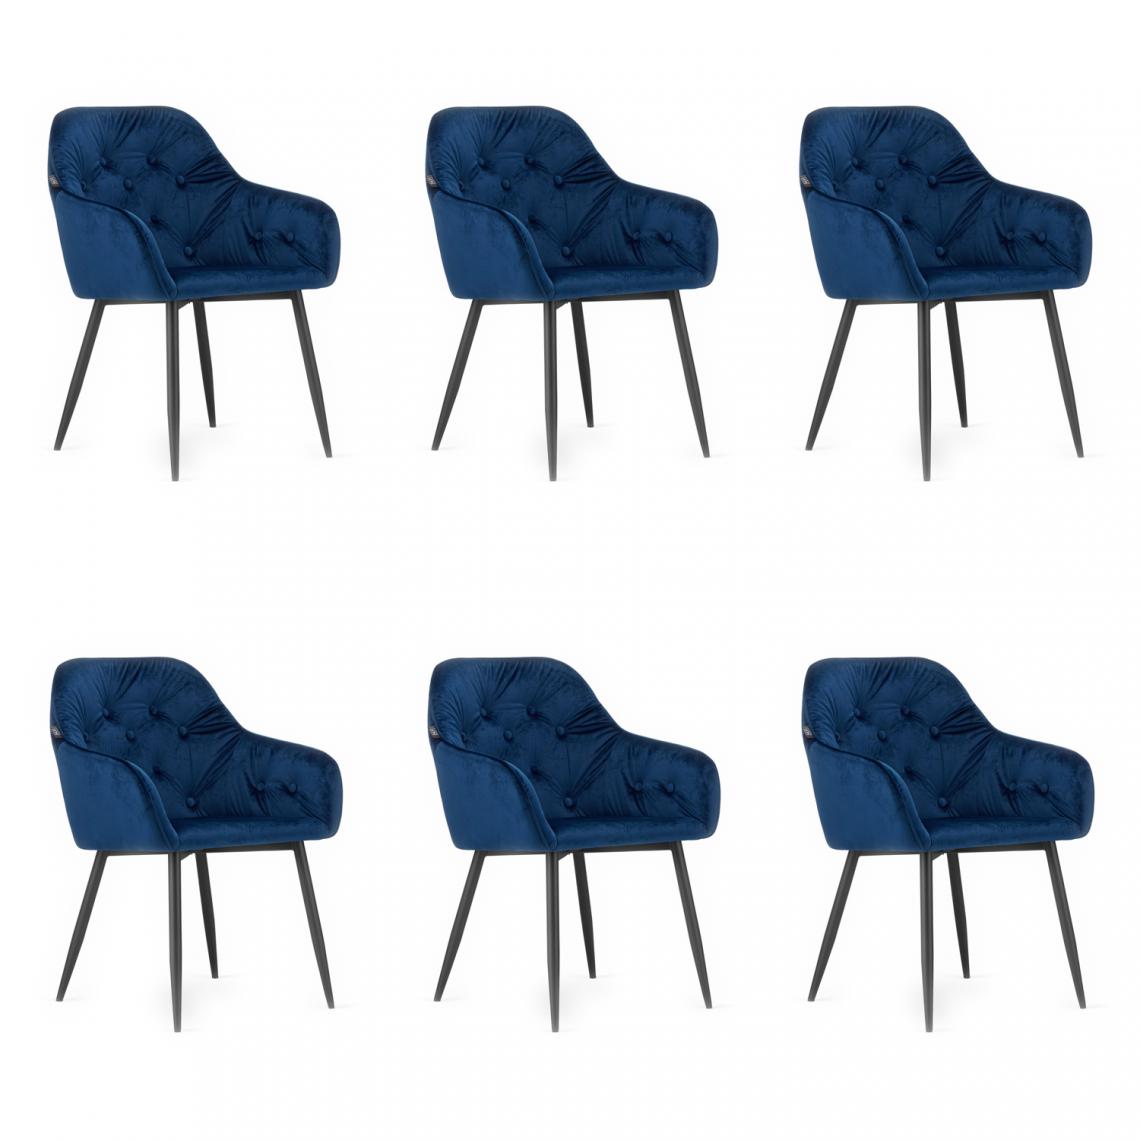 Hucoco - FORTO - Lot de 6 chaises style glamour salon/salle à manger - 81x55.5x61 cm - Fauteuil de table en velours - Bleu - Chaises